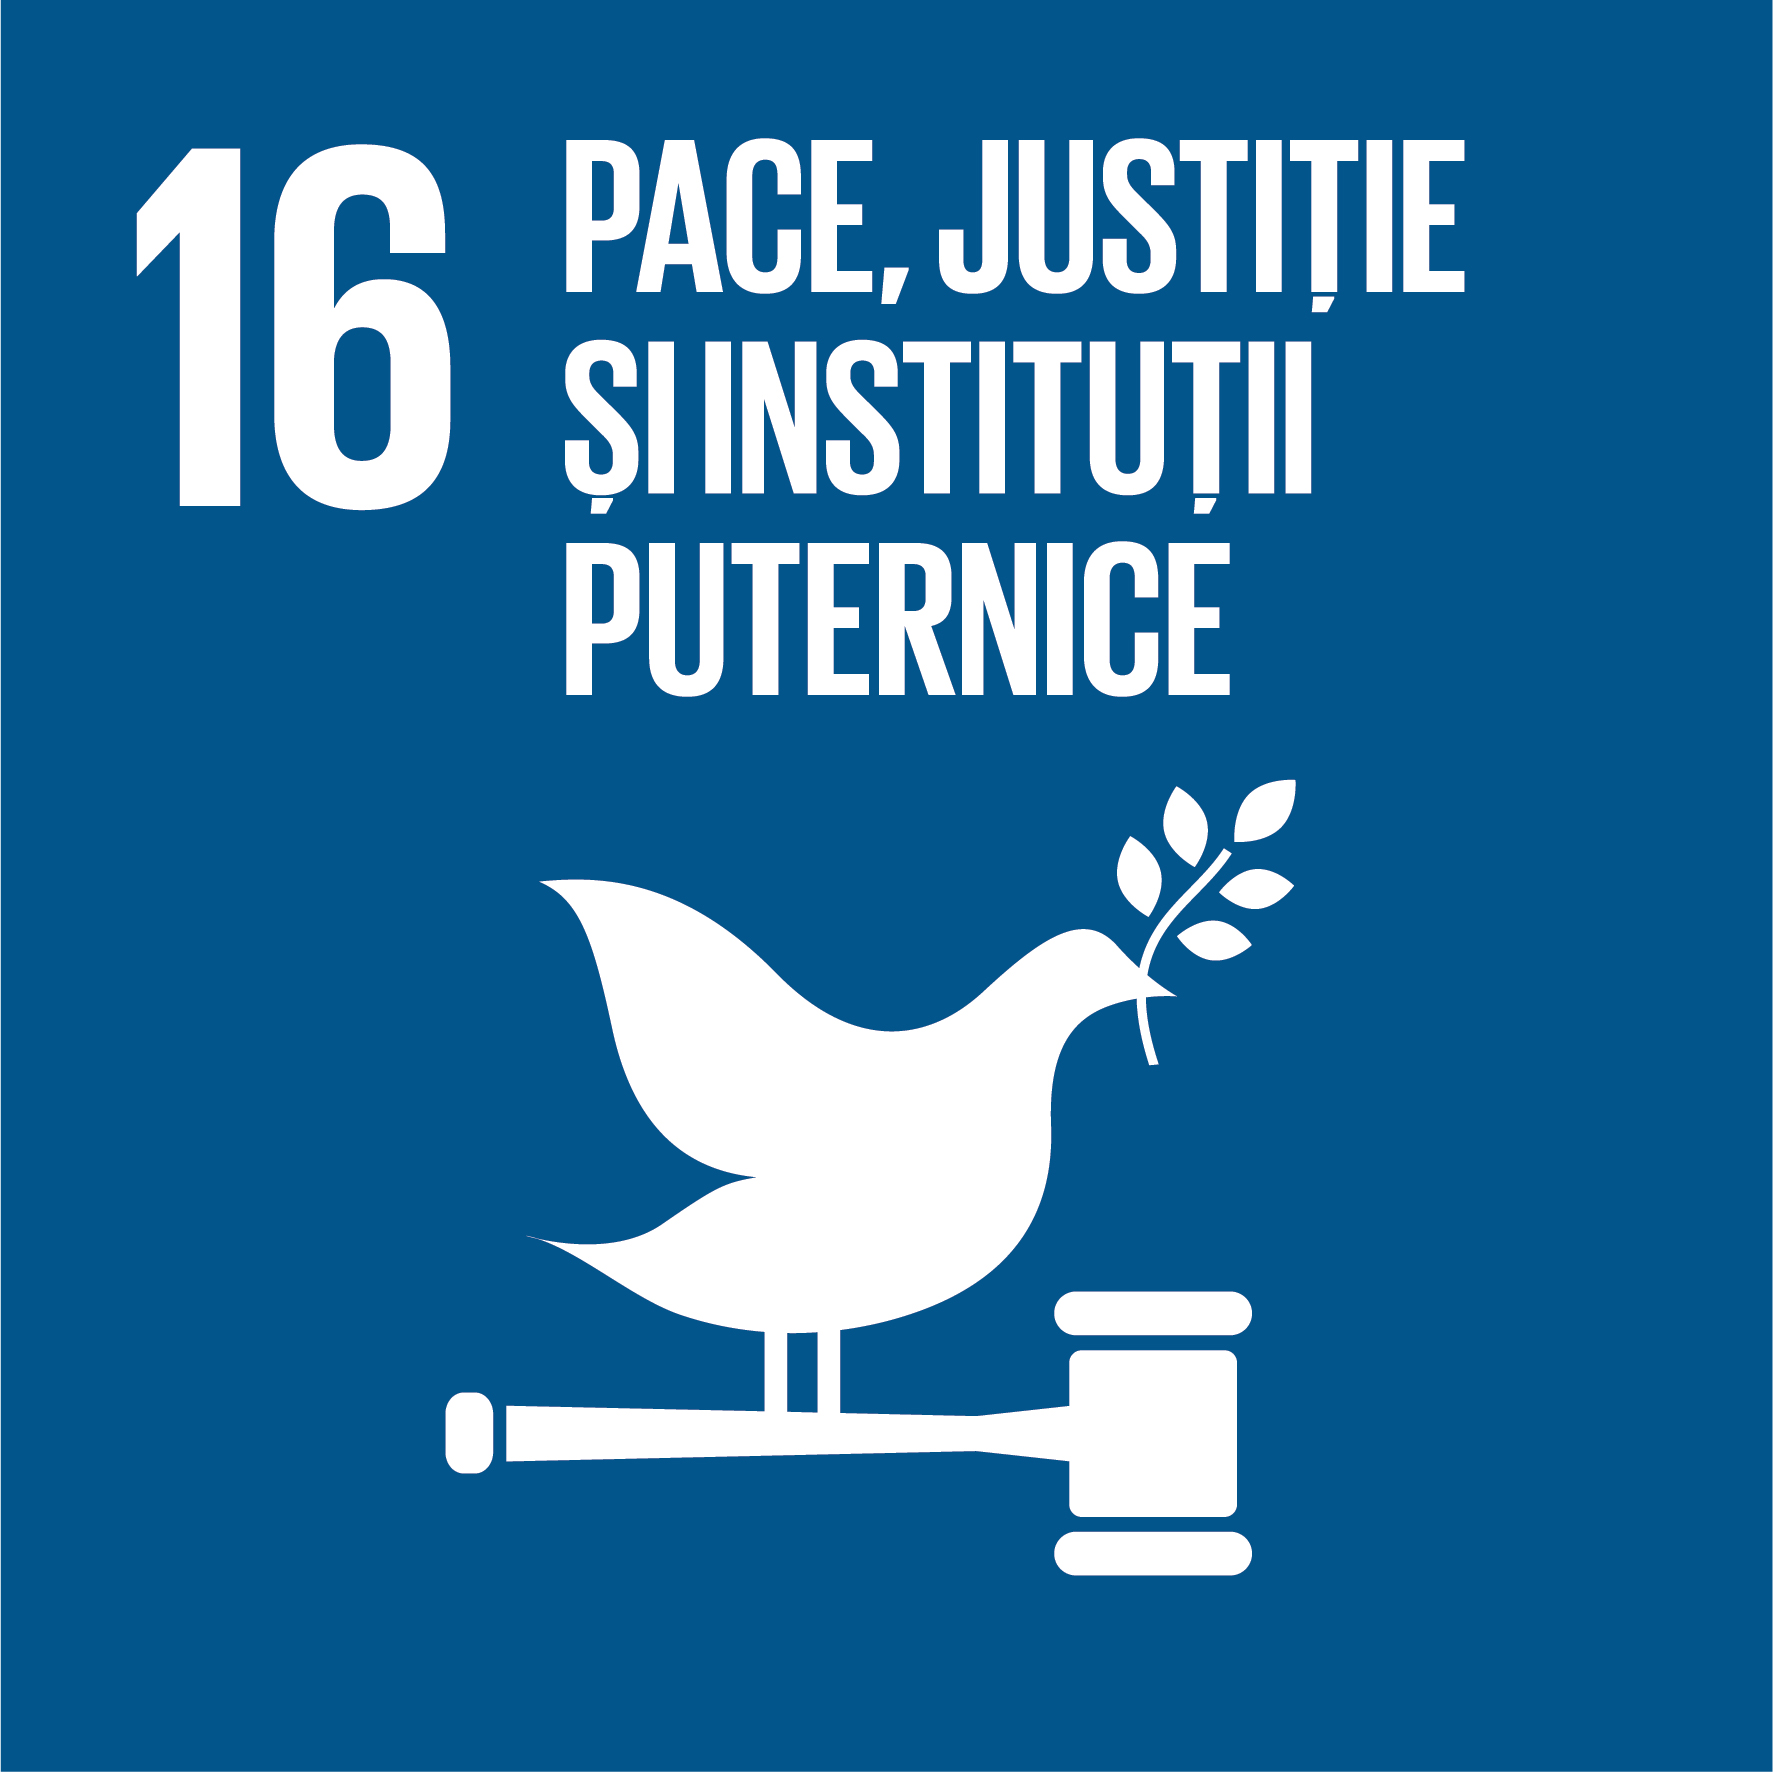 Obiectiv 16 - Pace, justiție și instituții puternice